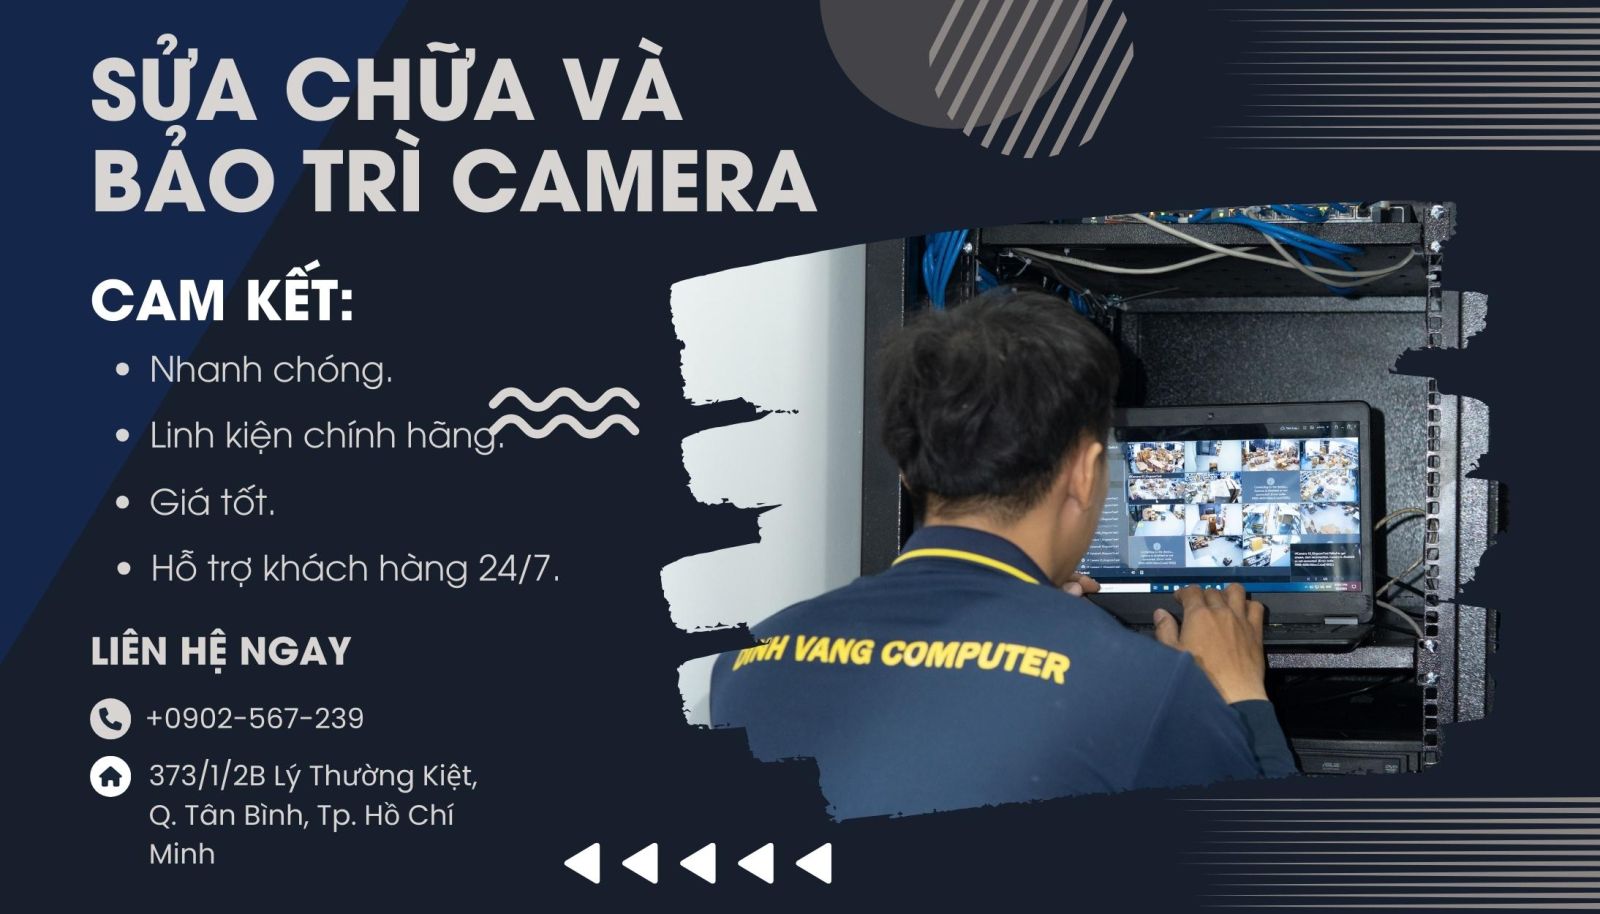 Đỉnh Vàng Computer chuyên cung cấp dịch vụ bảo trì và sửa chữa trọn bộ 9 camera tại TPHCM và Bình Dương.